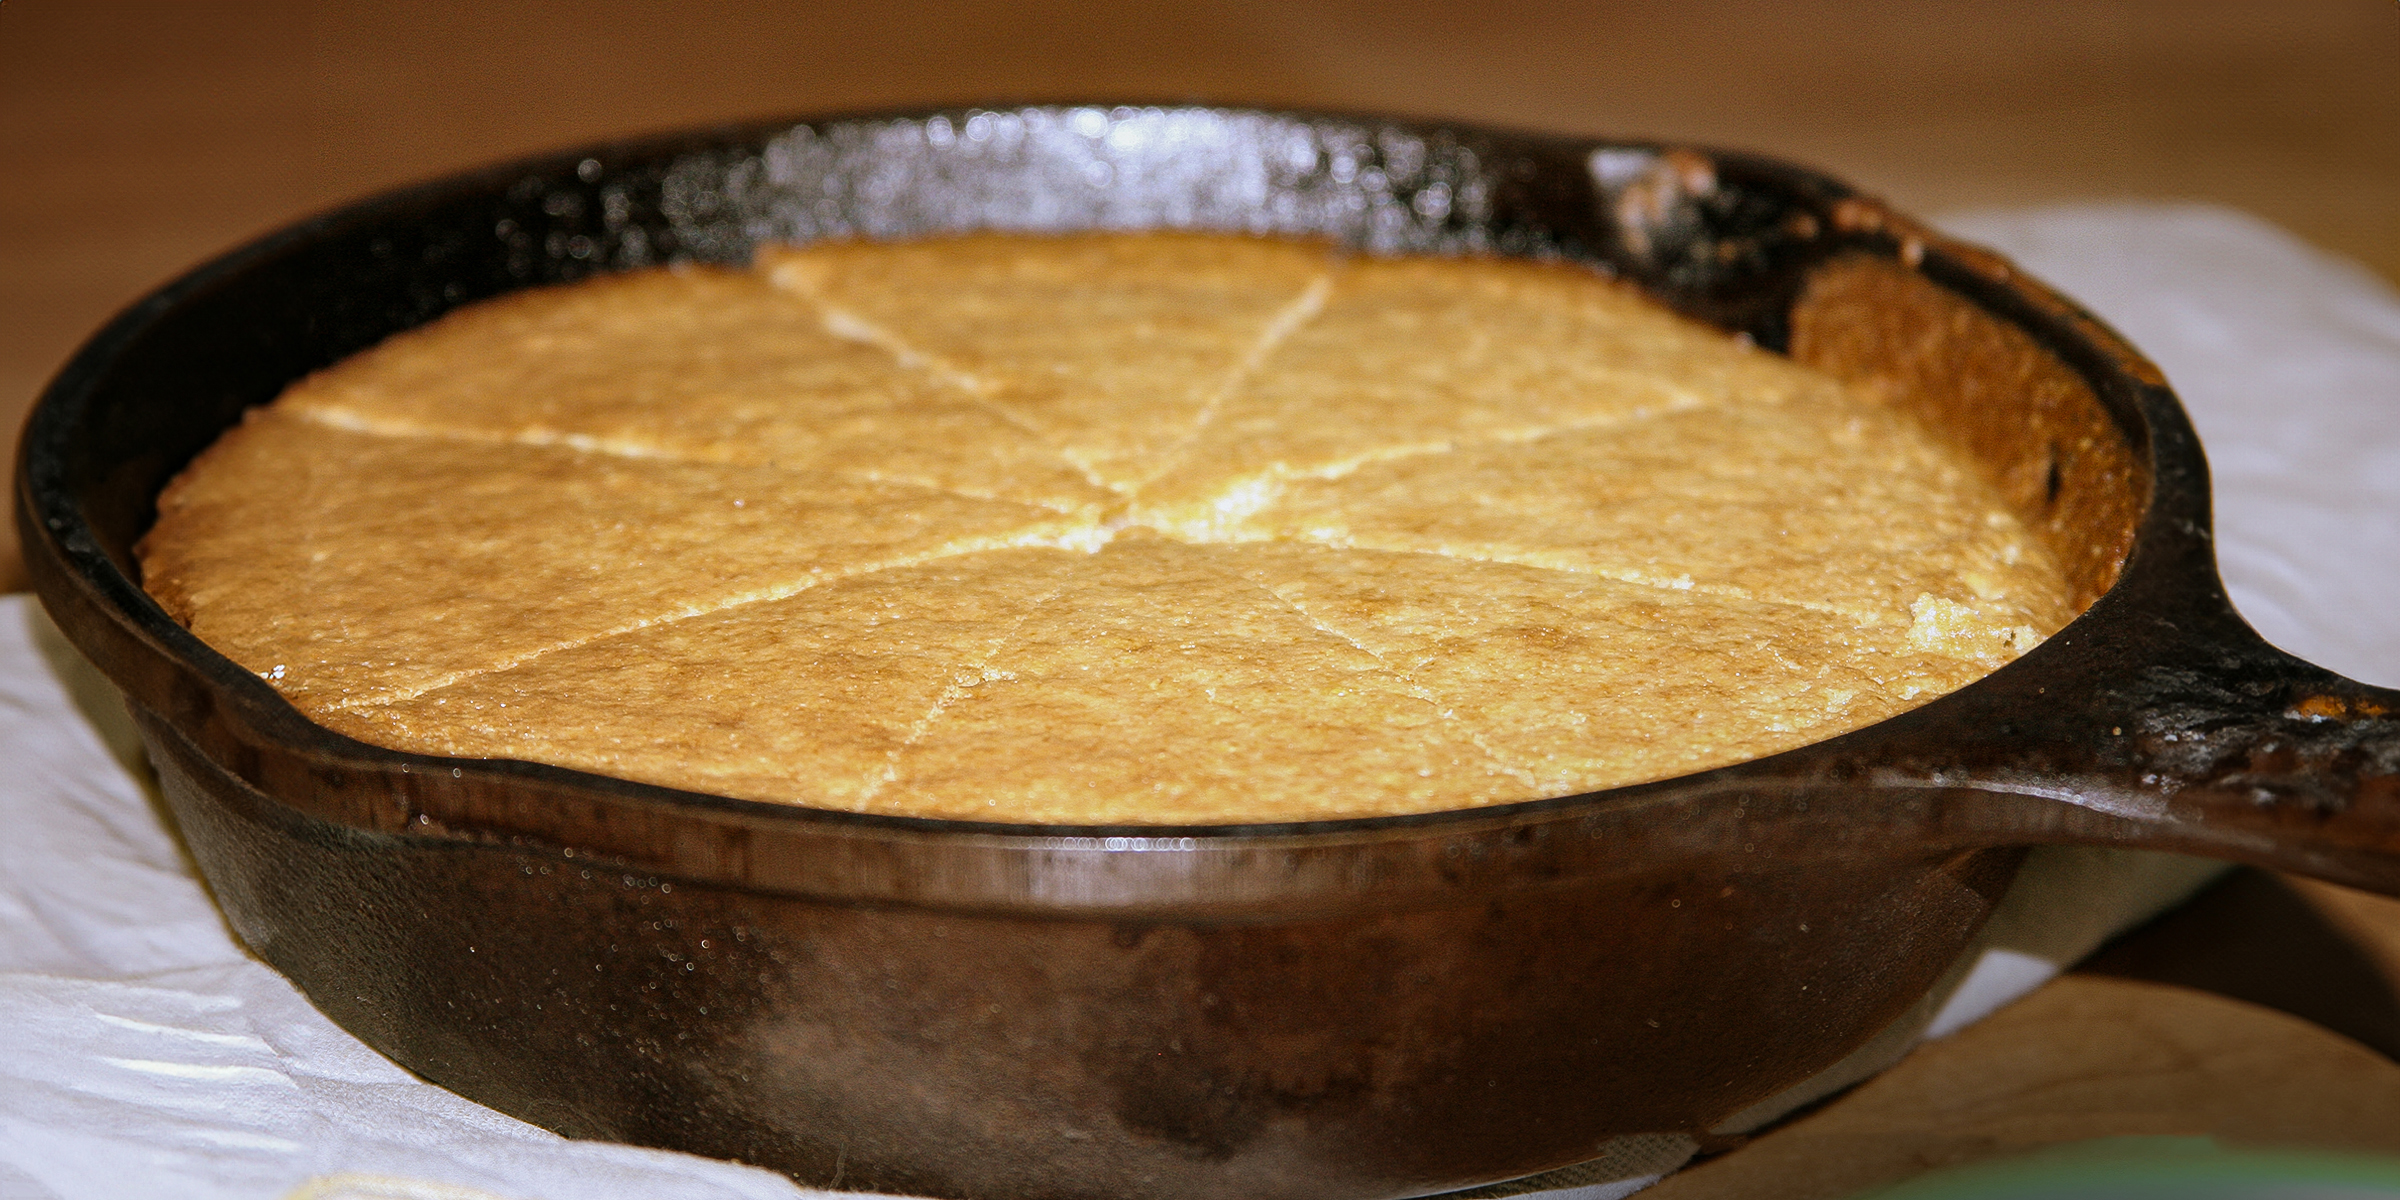 Une casserole avec du pain de maïs | Source : Flickr